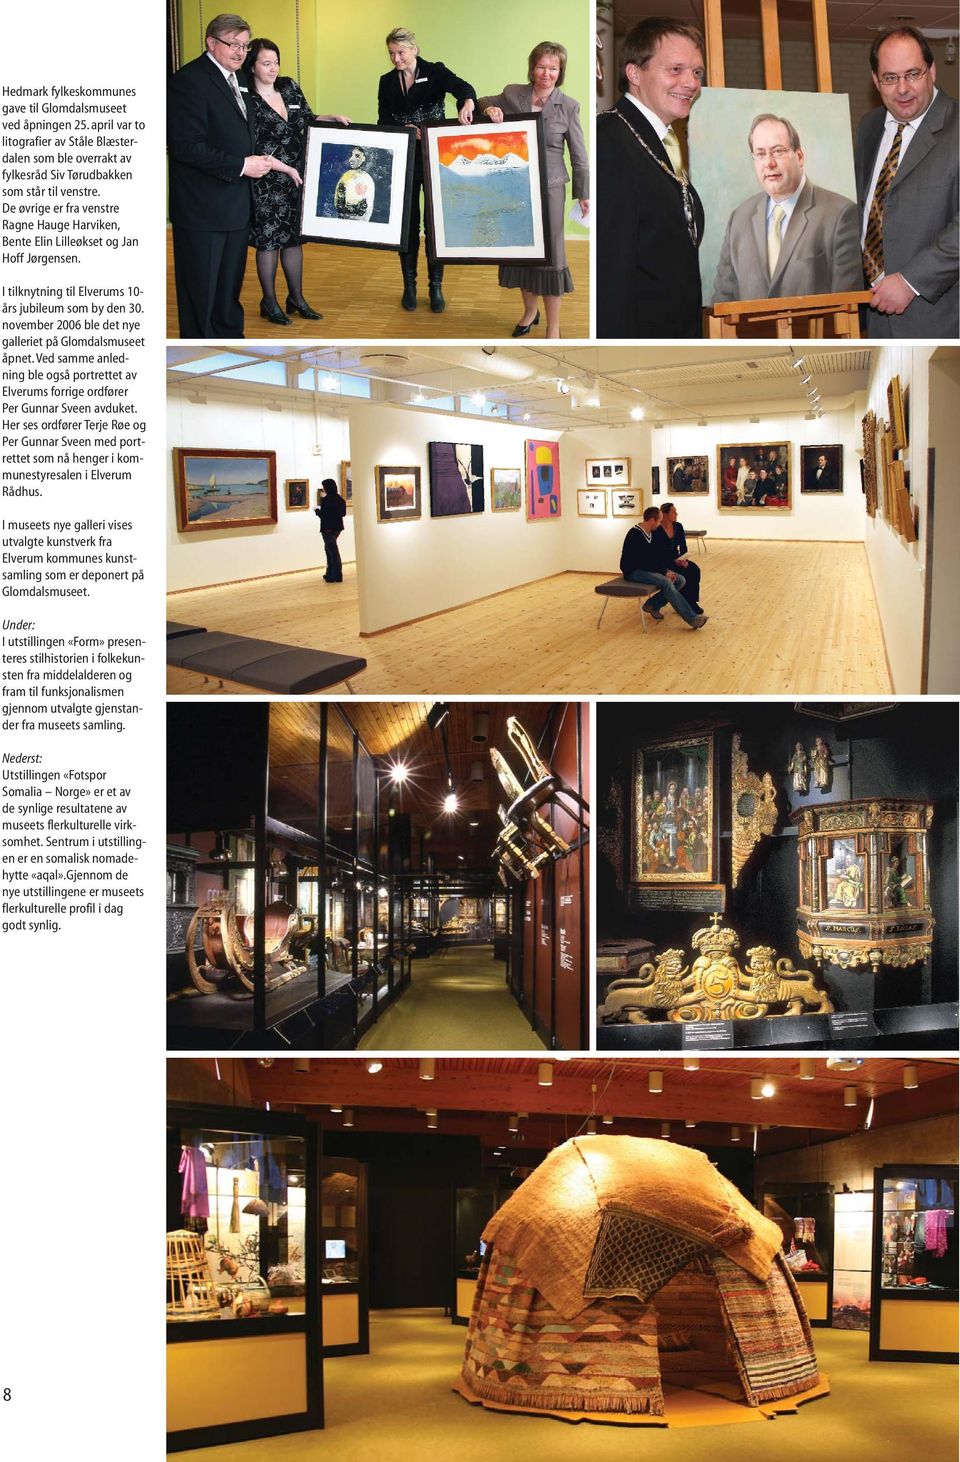 november 2006 ble det nye galleriet på Glomdalsmuseet åpnet. Ved samme anledning ble også portrettet av Elverums forrige ordfører Per Gunnar Sveen avduket.